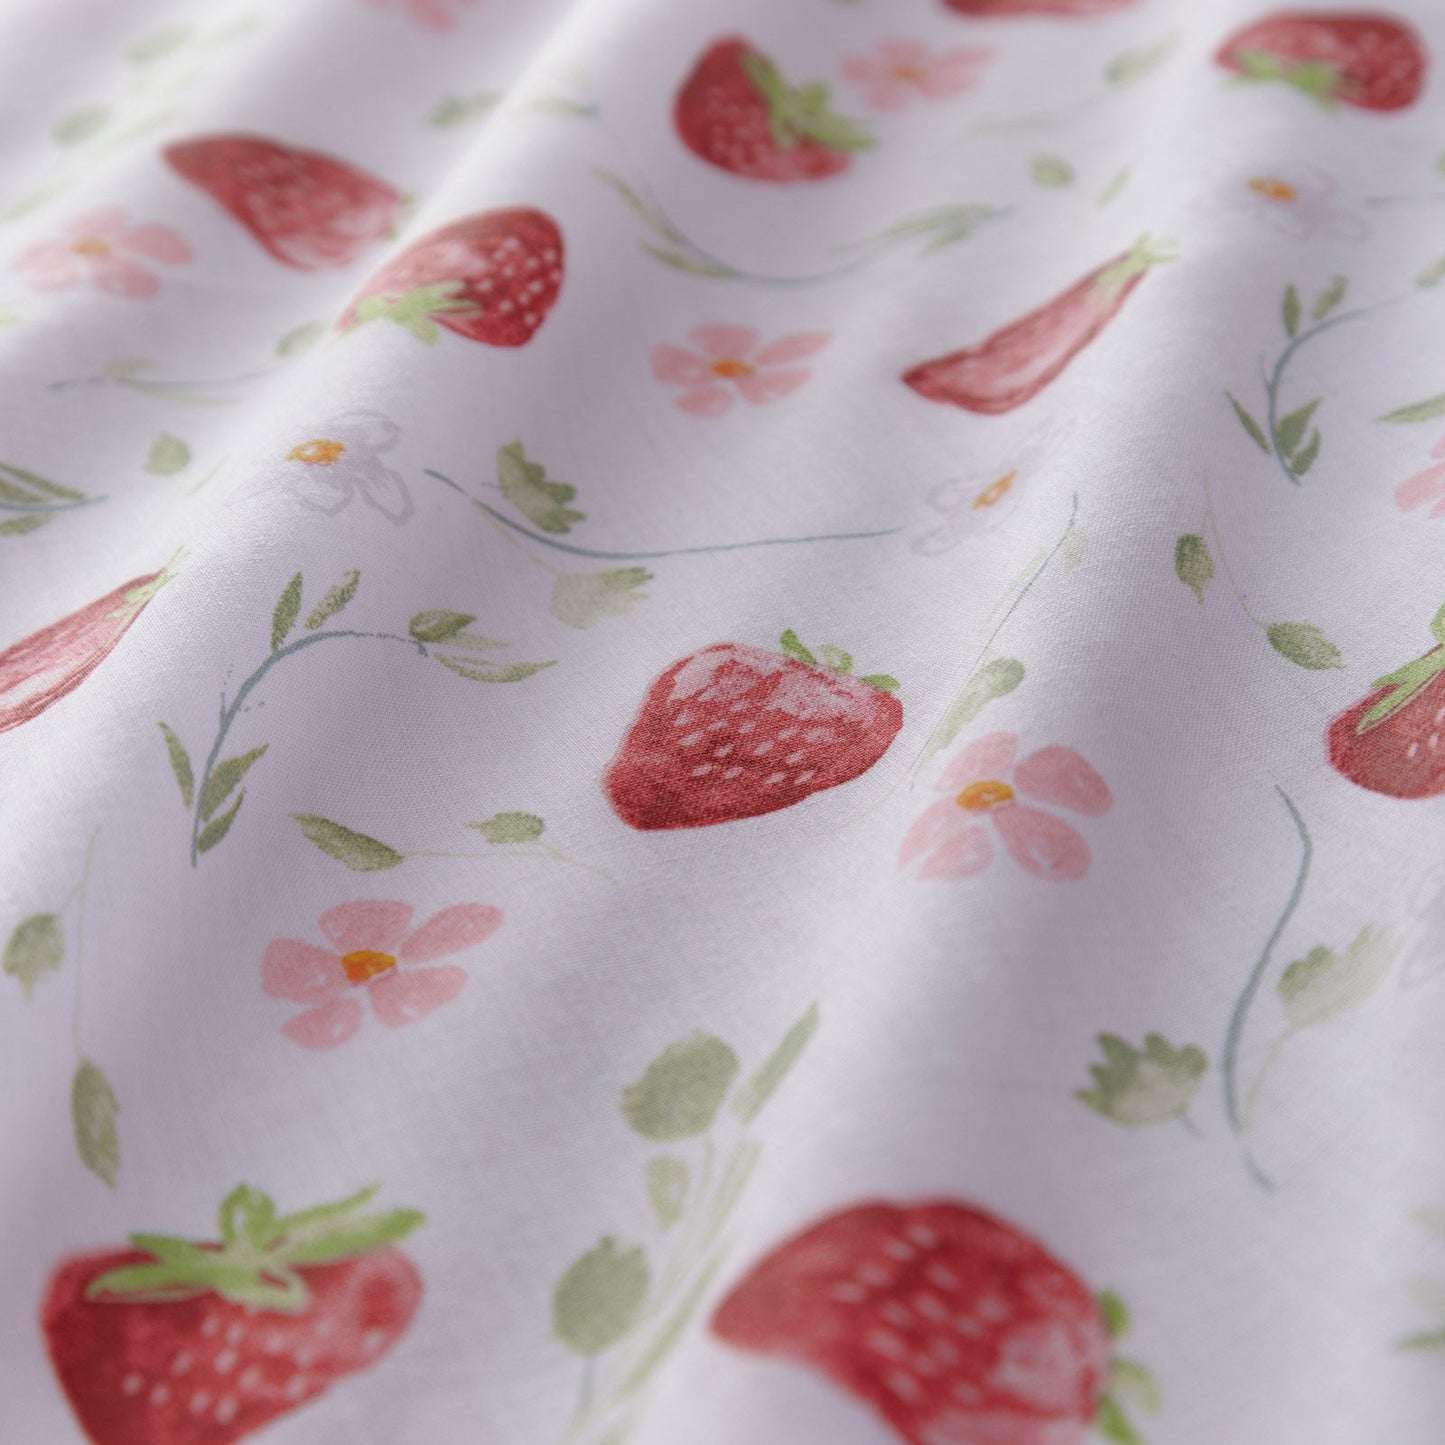 Strawberry Fields Duvet Cover Set by Portfolio Home